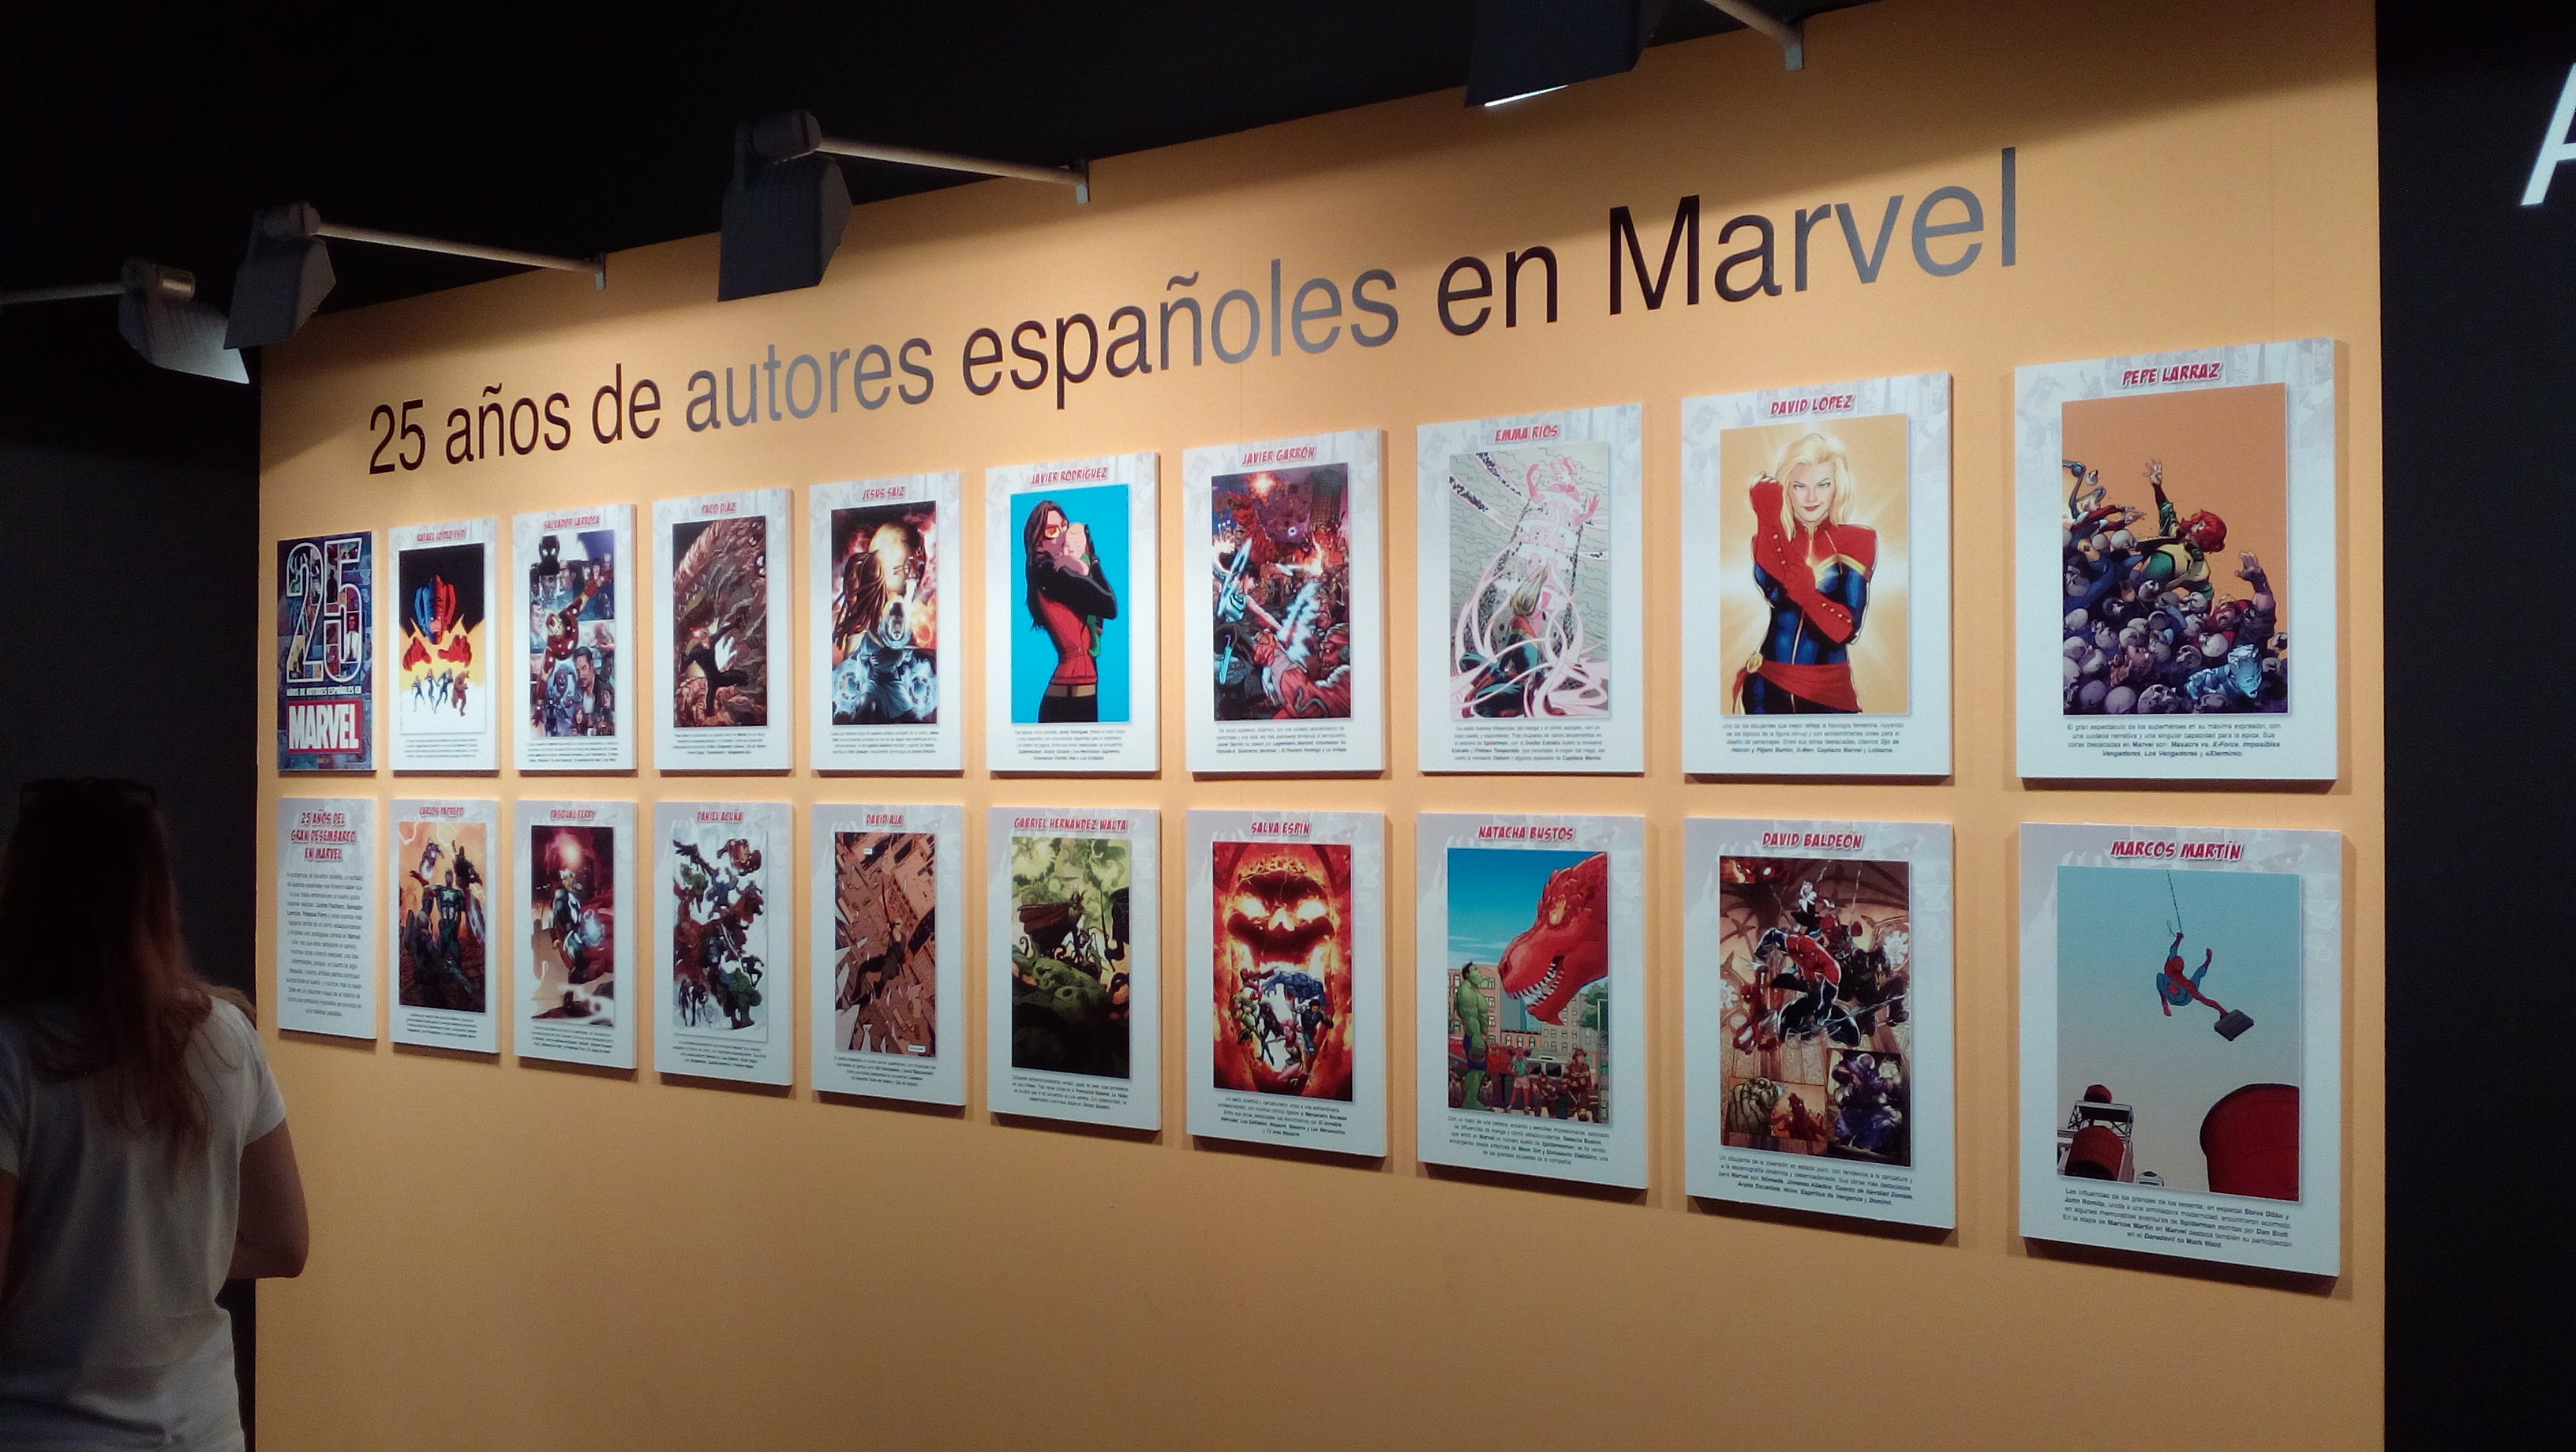 Heroes Comic Con Madrid 2018: Exposición 25 años de autores españoles en Marvel.